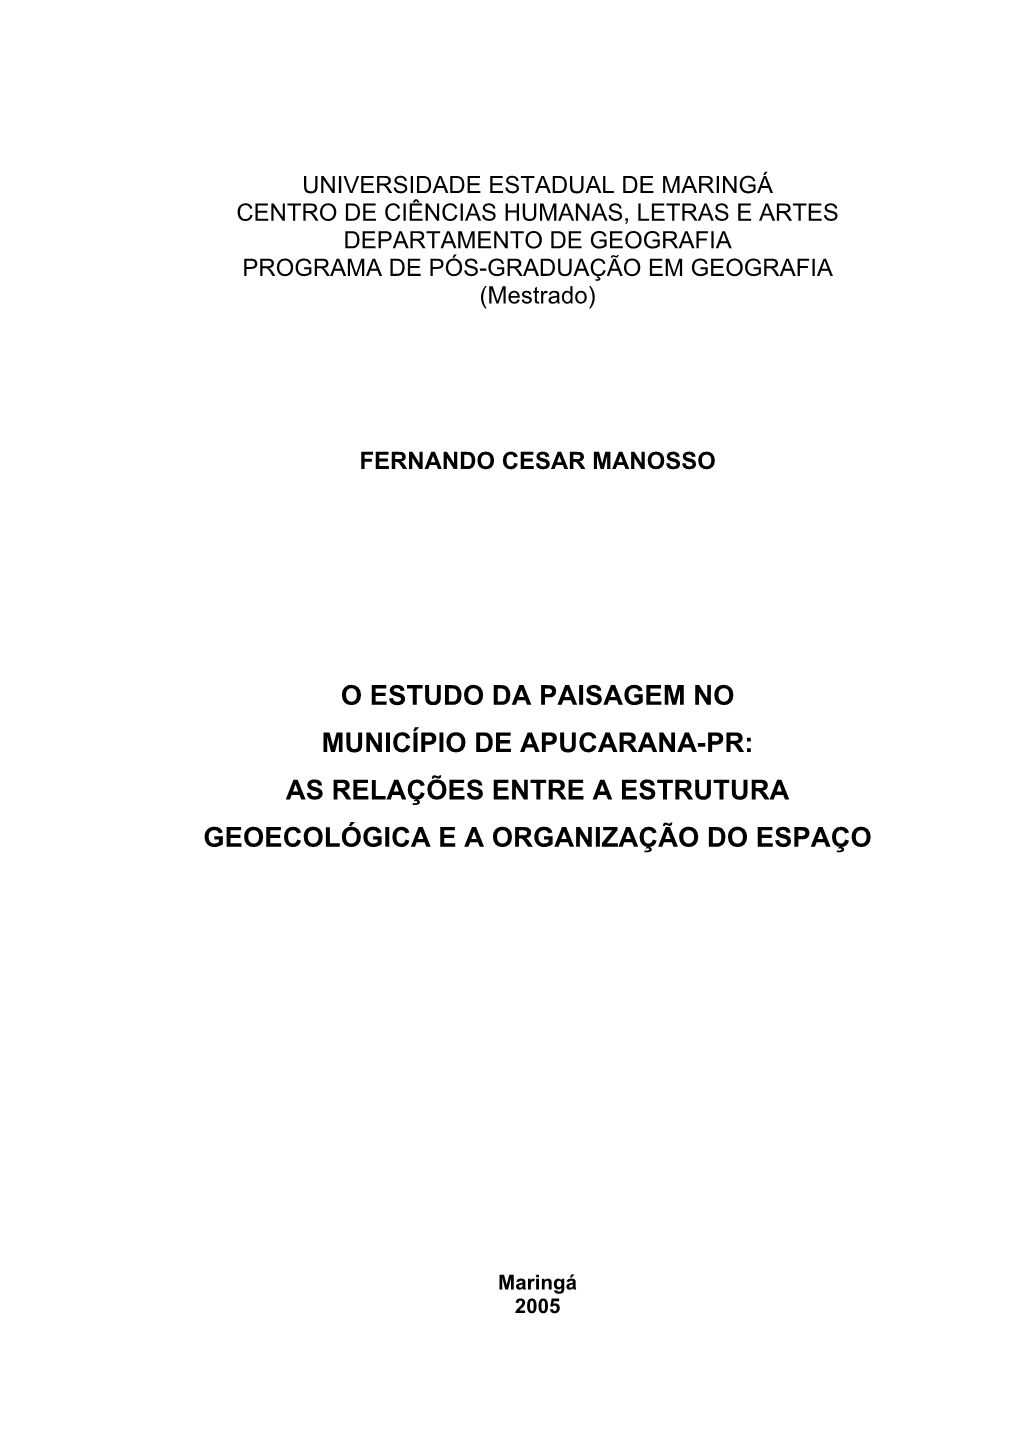 O Estudo Da Paisagem No Município De Apucarana-Pr: As Relações Entre a Estrutura Geoecológica E a Organização Do Espaço